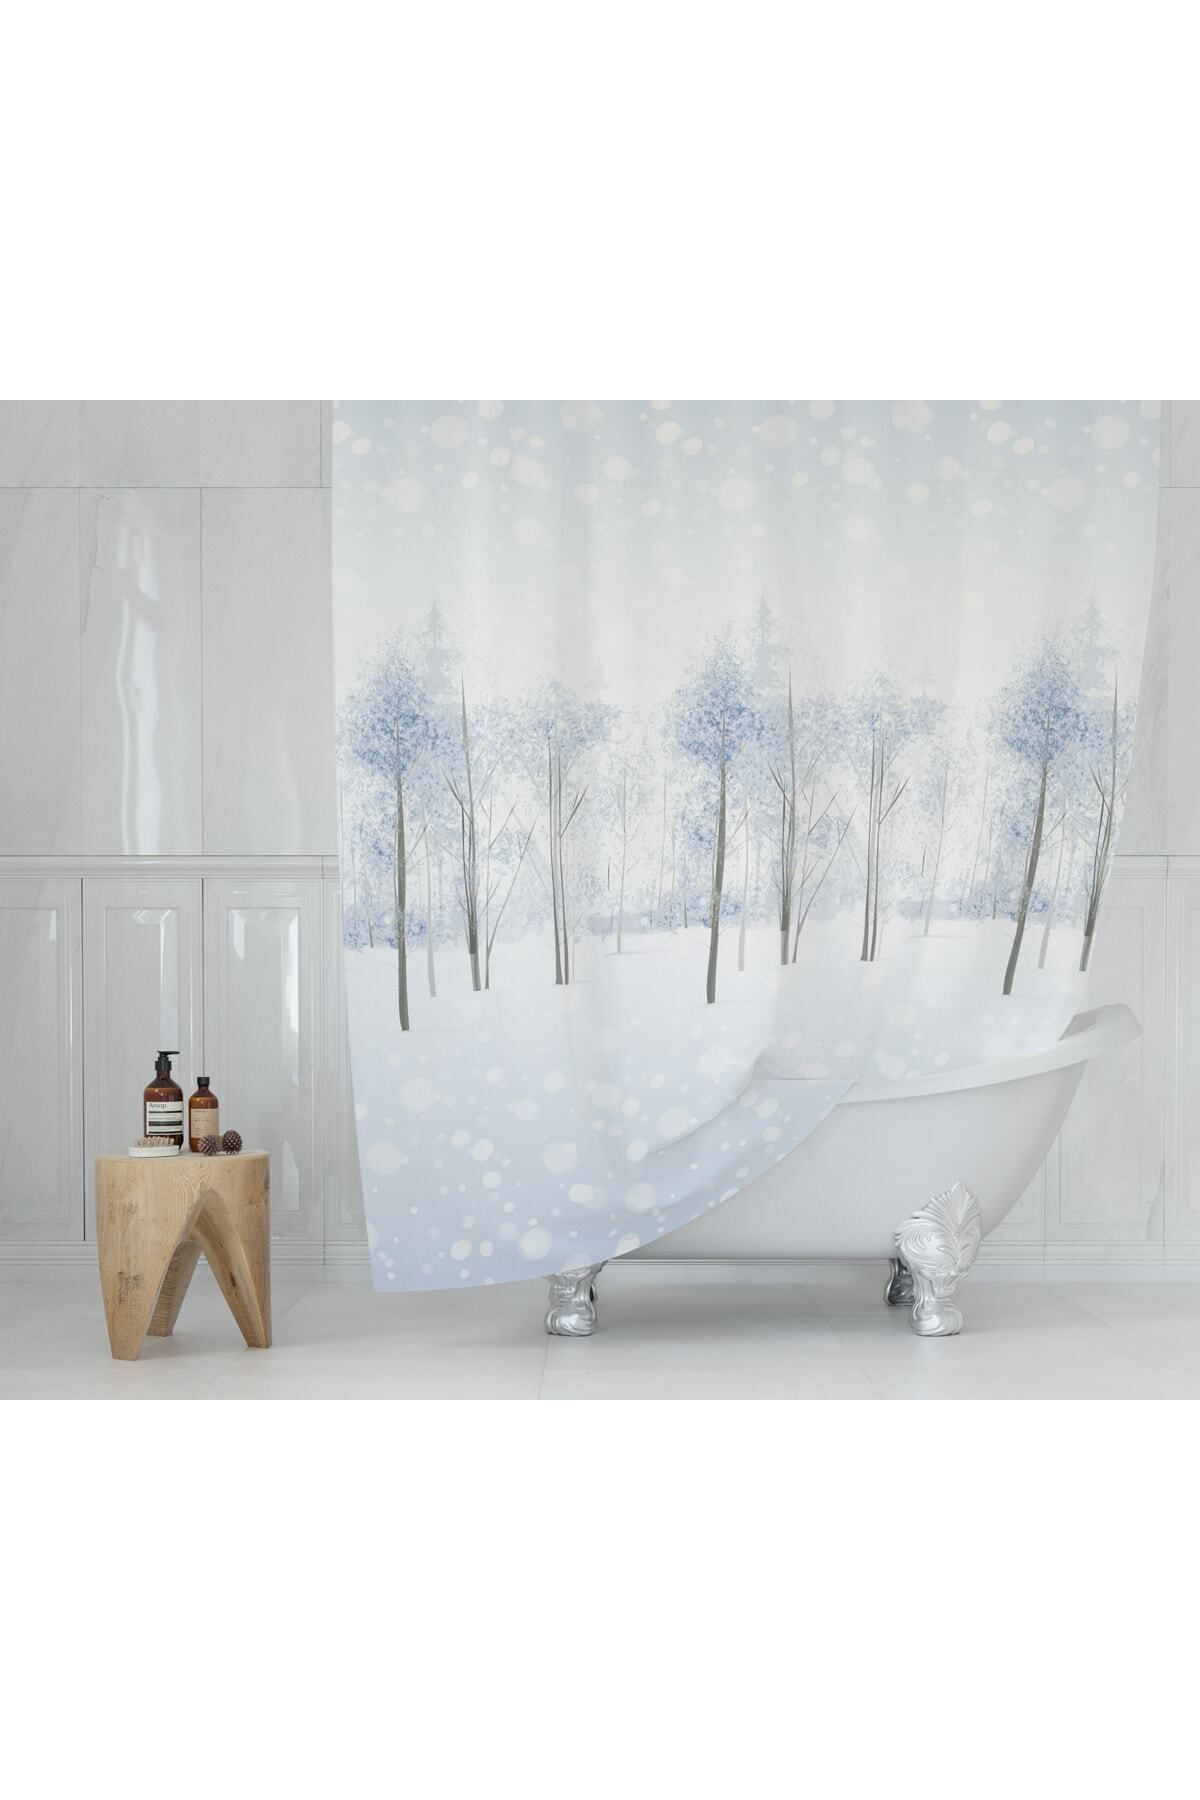 Tropikhome Kar Desenli Beyaz Ağaç Desen Banyo Duş Perdesi-polyester Kumaş Tek Kanat Banyo Perdesi 180x200 Cm